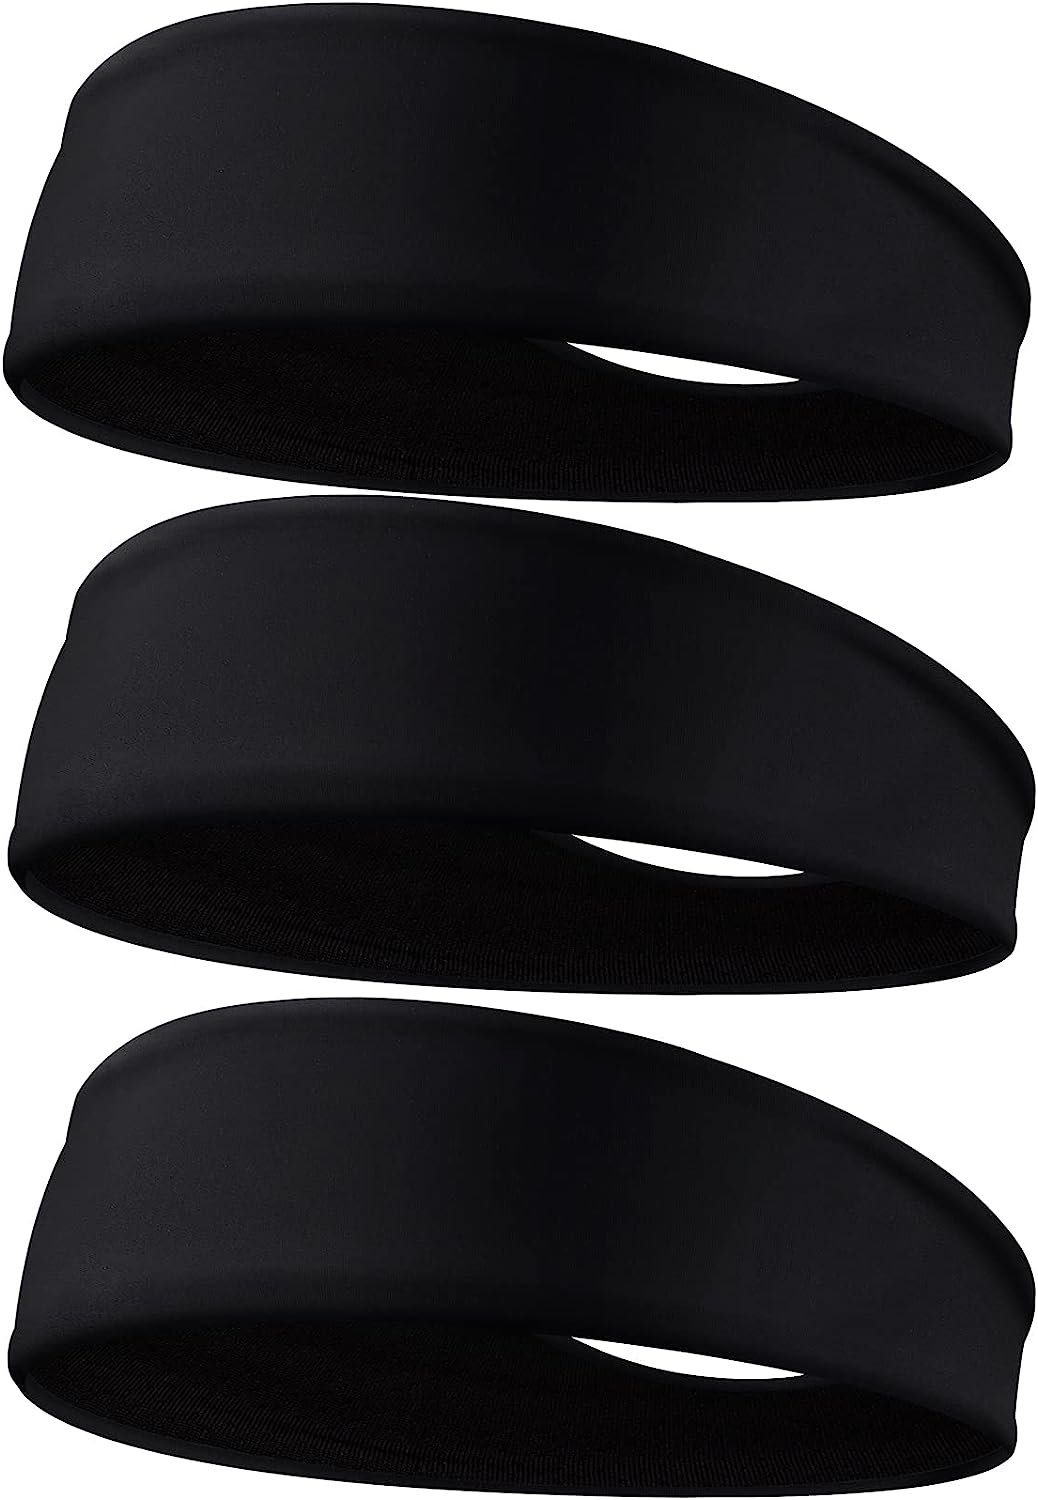 Braylin Men's Headbands, 3-Pack Headbands for Men